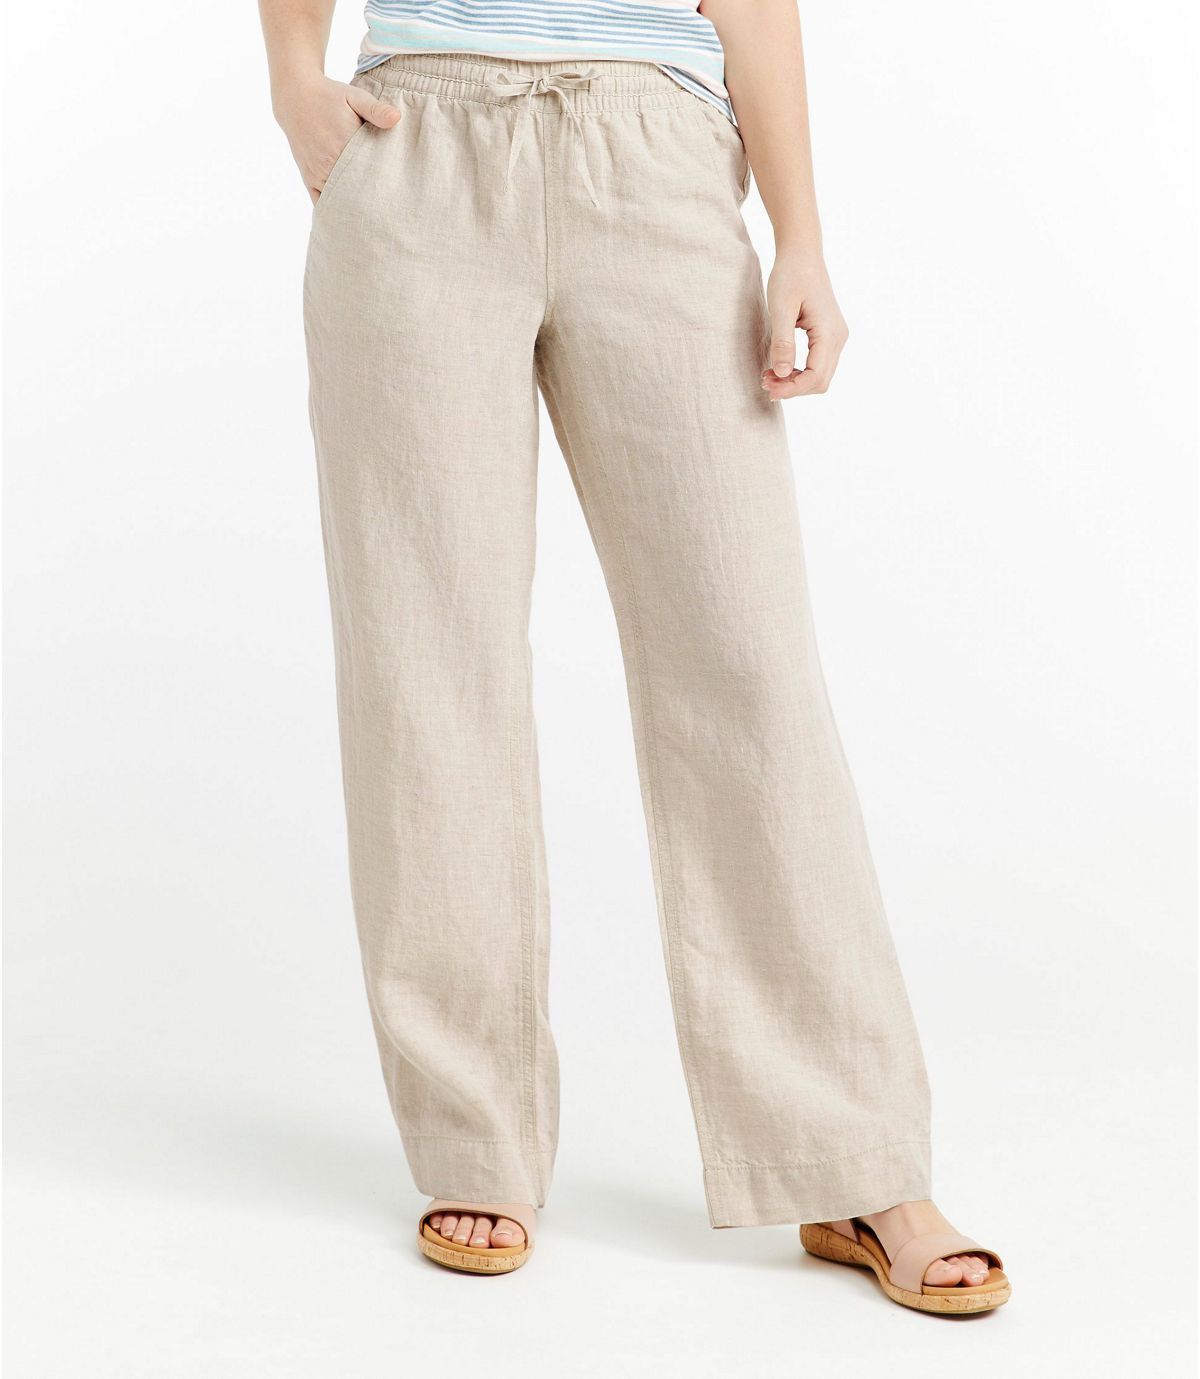 Women's Premium Washable Linen Pull-On Pants | Pants at L.L.Bean | L.L. Bean